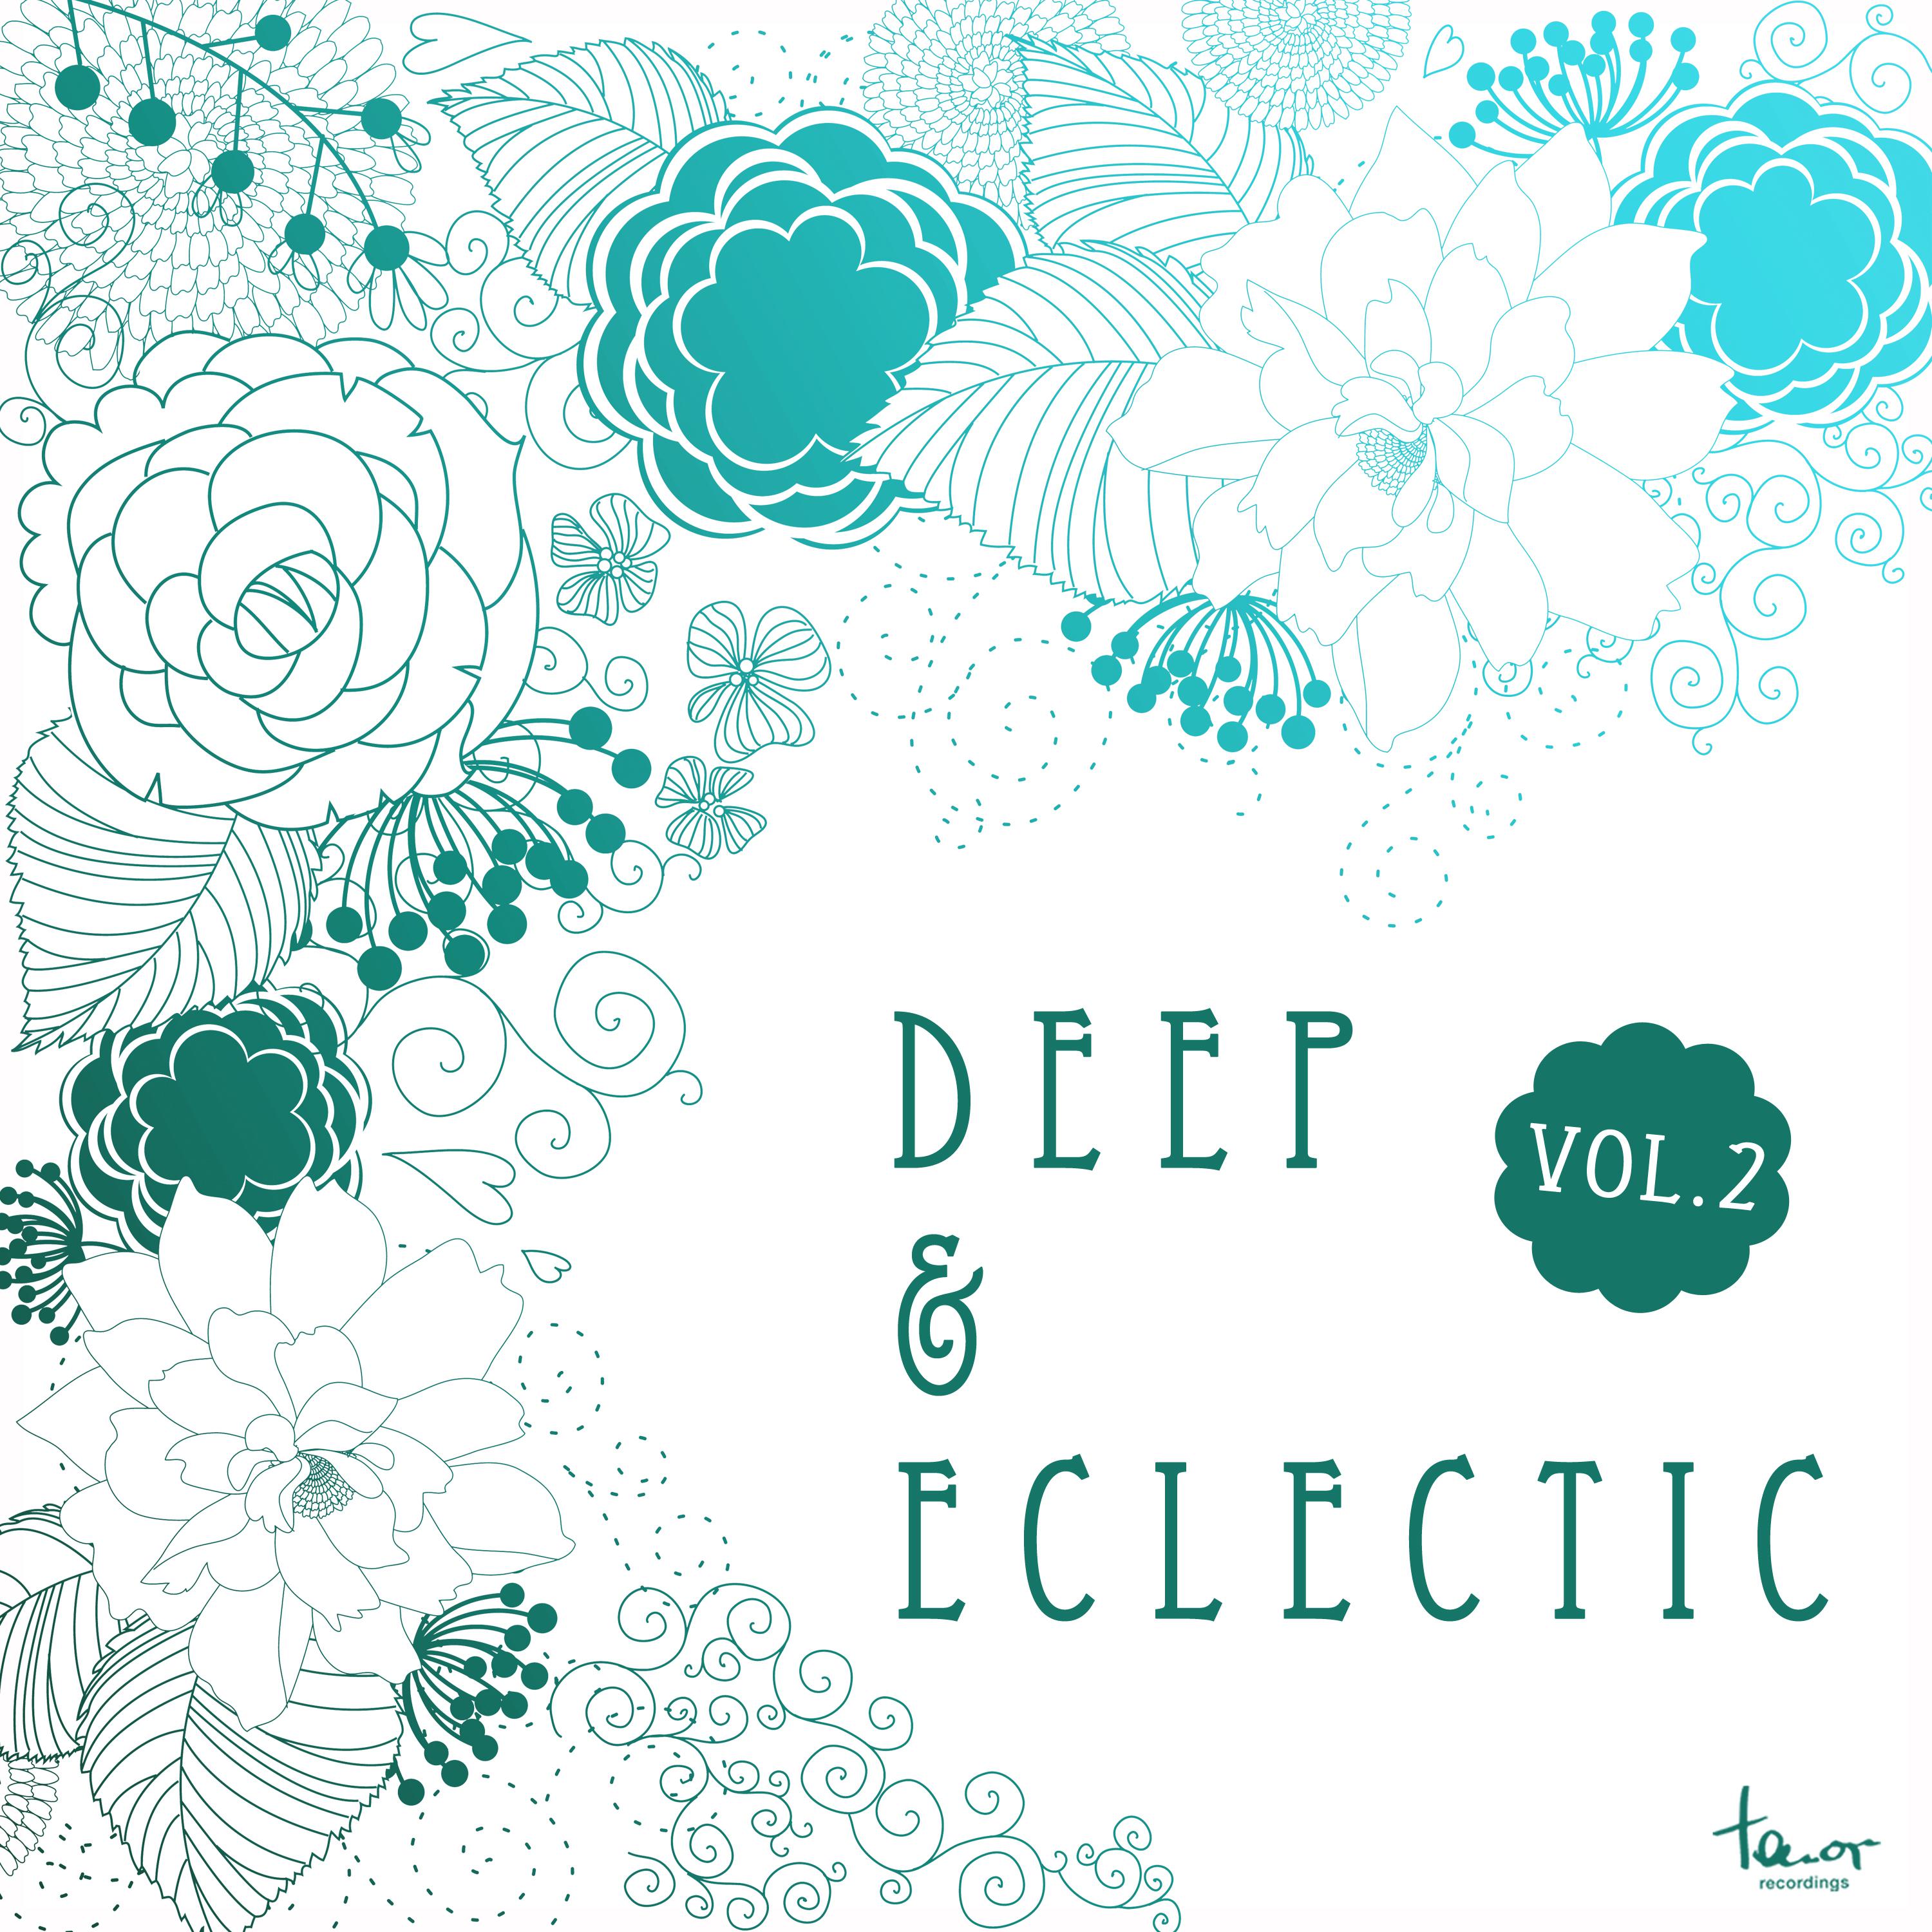 Deep & Eclectic, Vol. 2